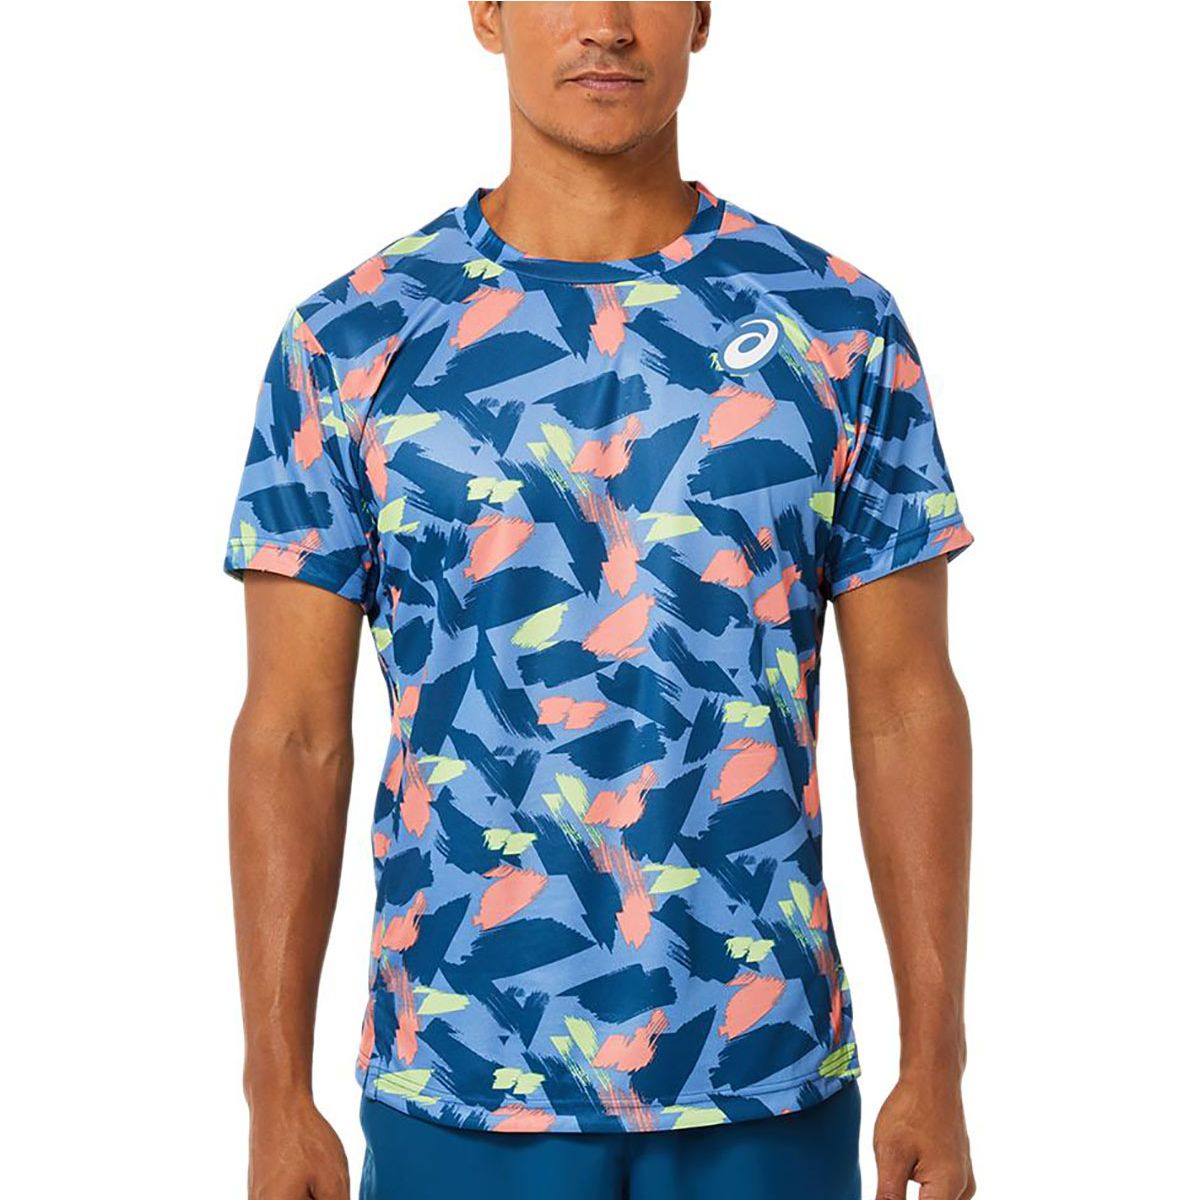 Asics Match Graphic Men's Tennis T-Shirt 2041A191-401